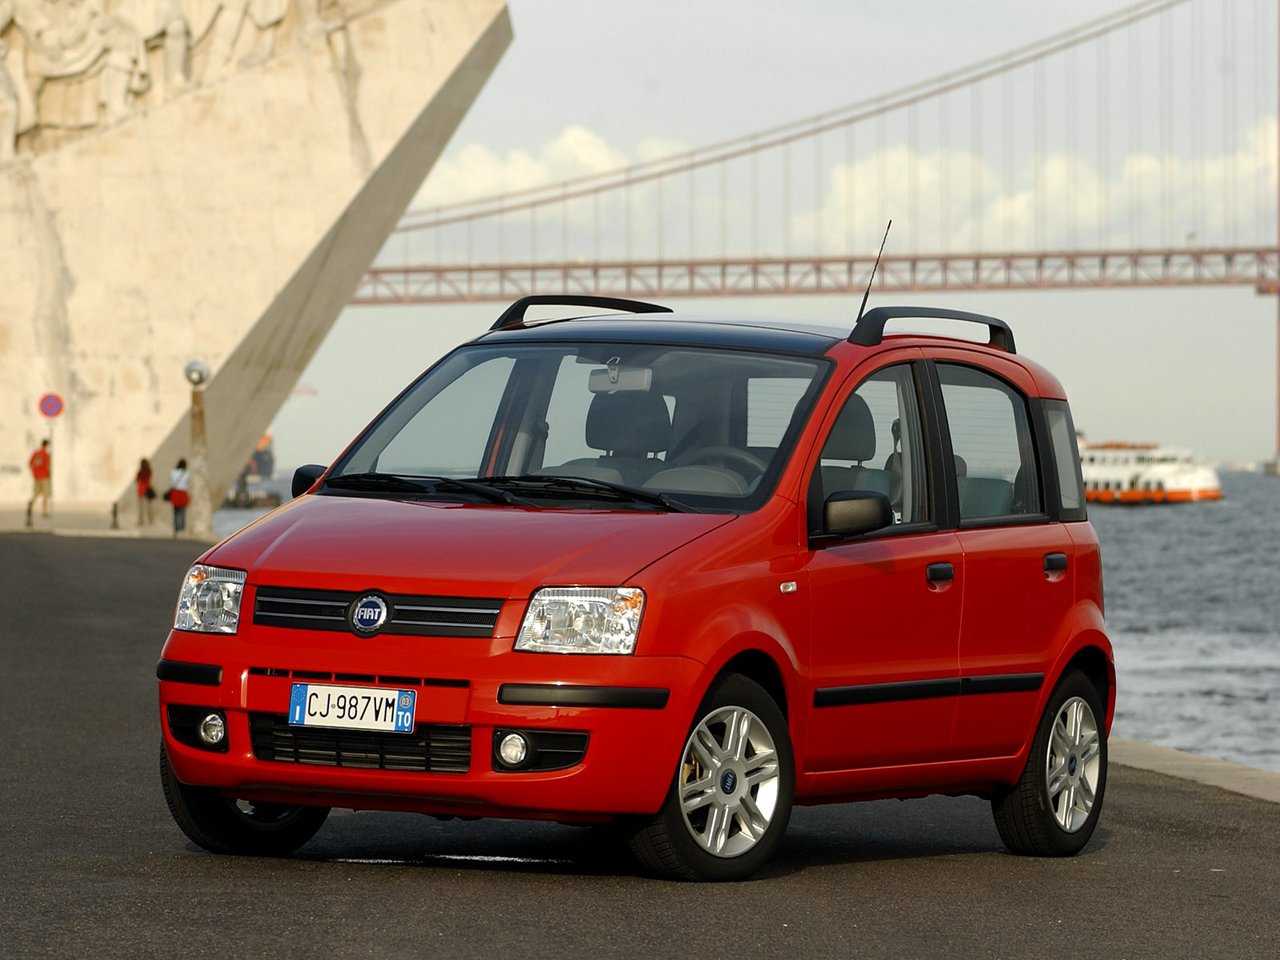 Технические параметры и характеристики Fiat Panda II 20032012, стоимость в России Обзор второго поколения Фиата Панды Классик и фото